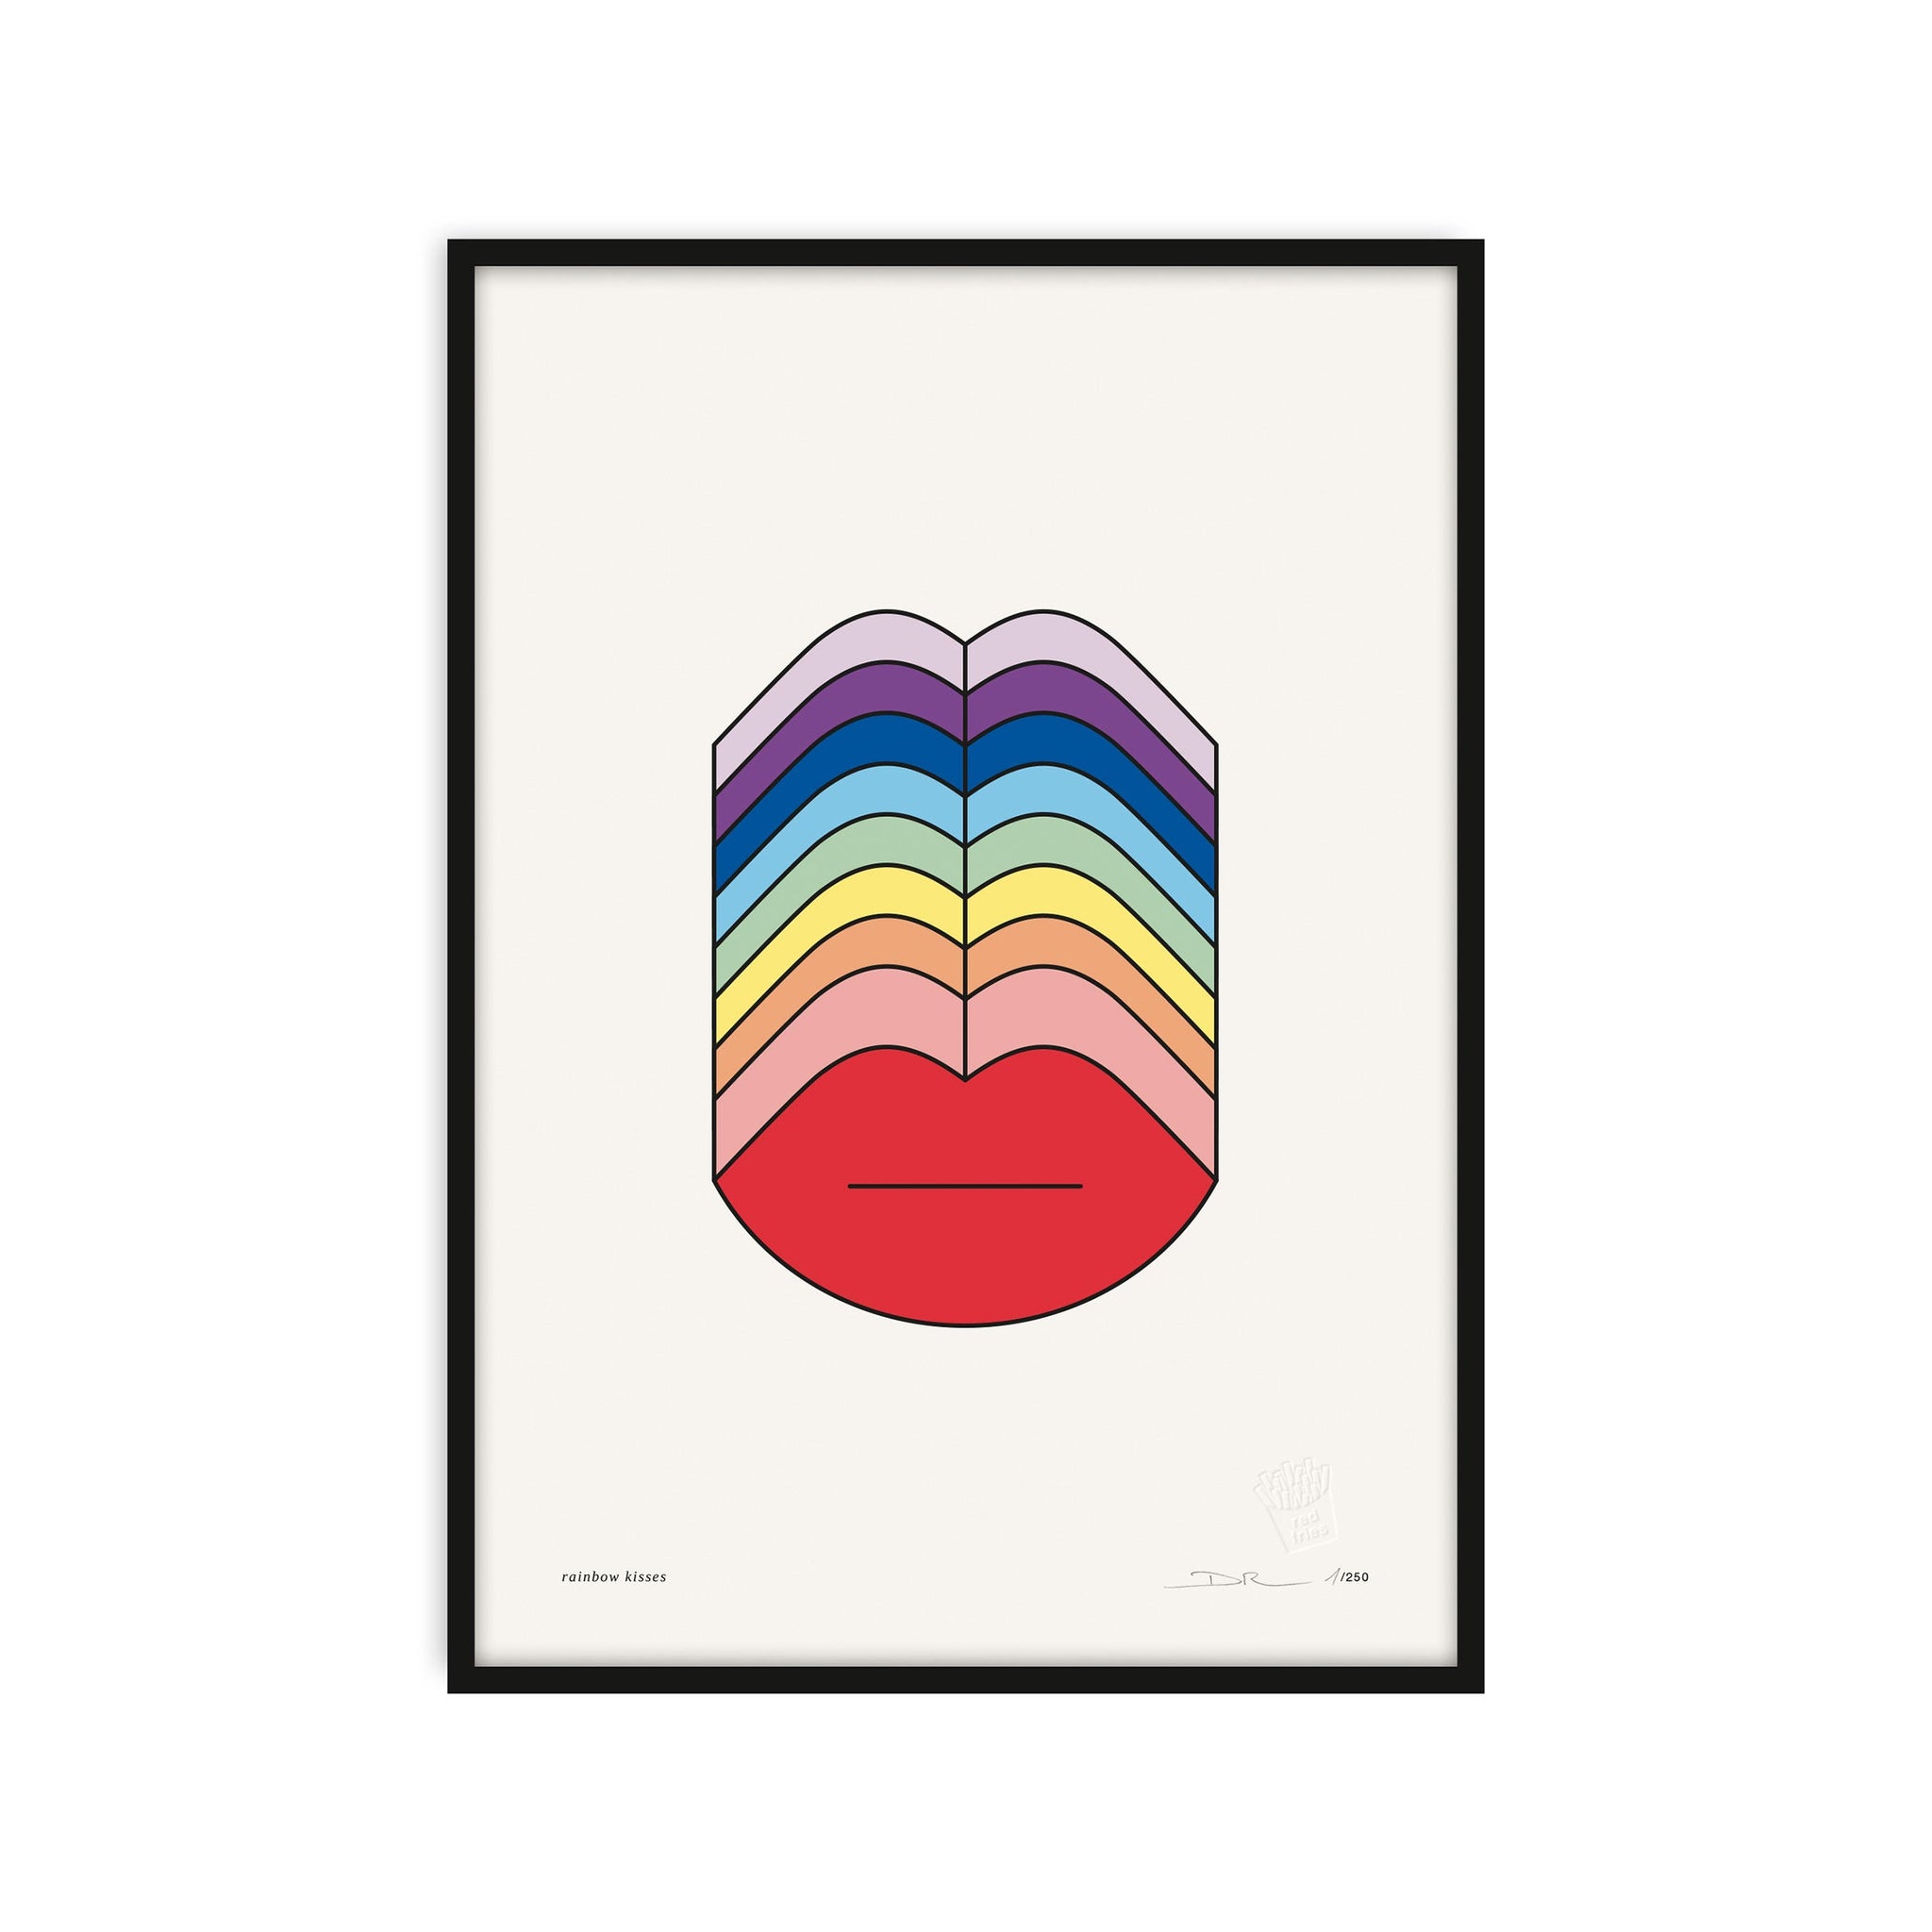 #0497 rainbow kisses a3